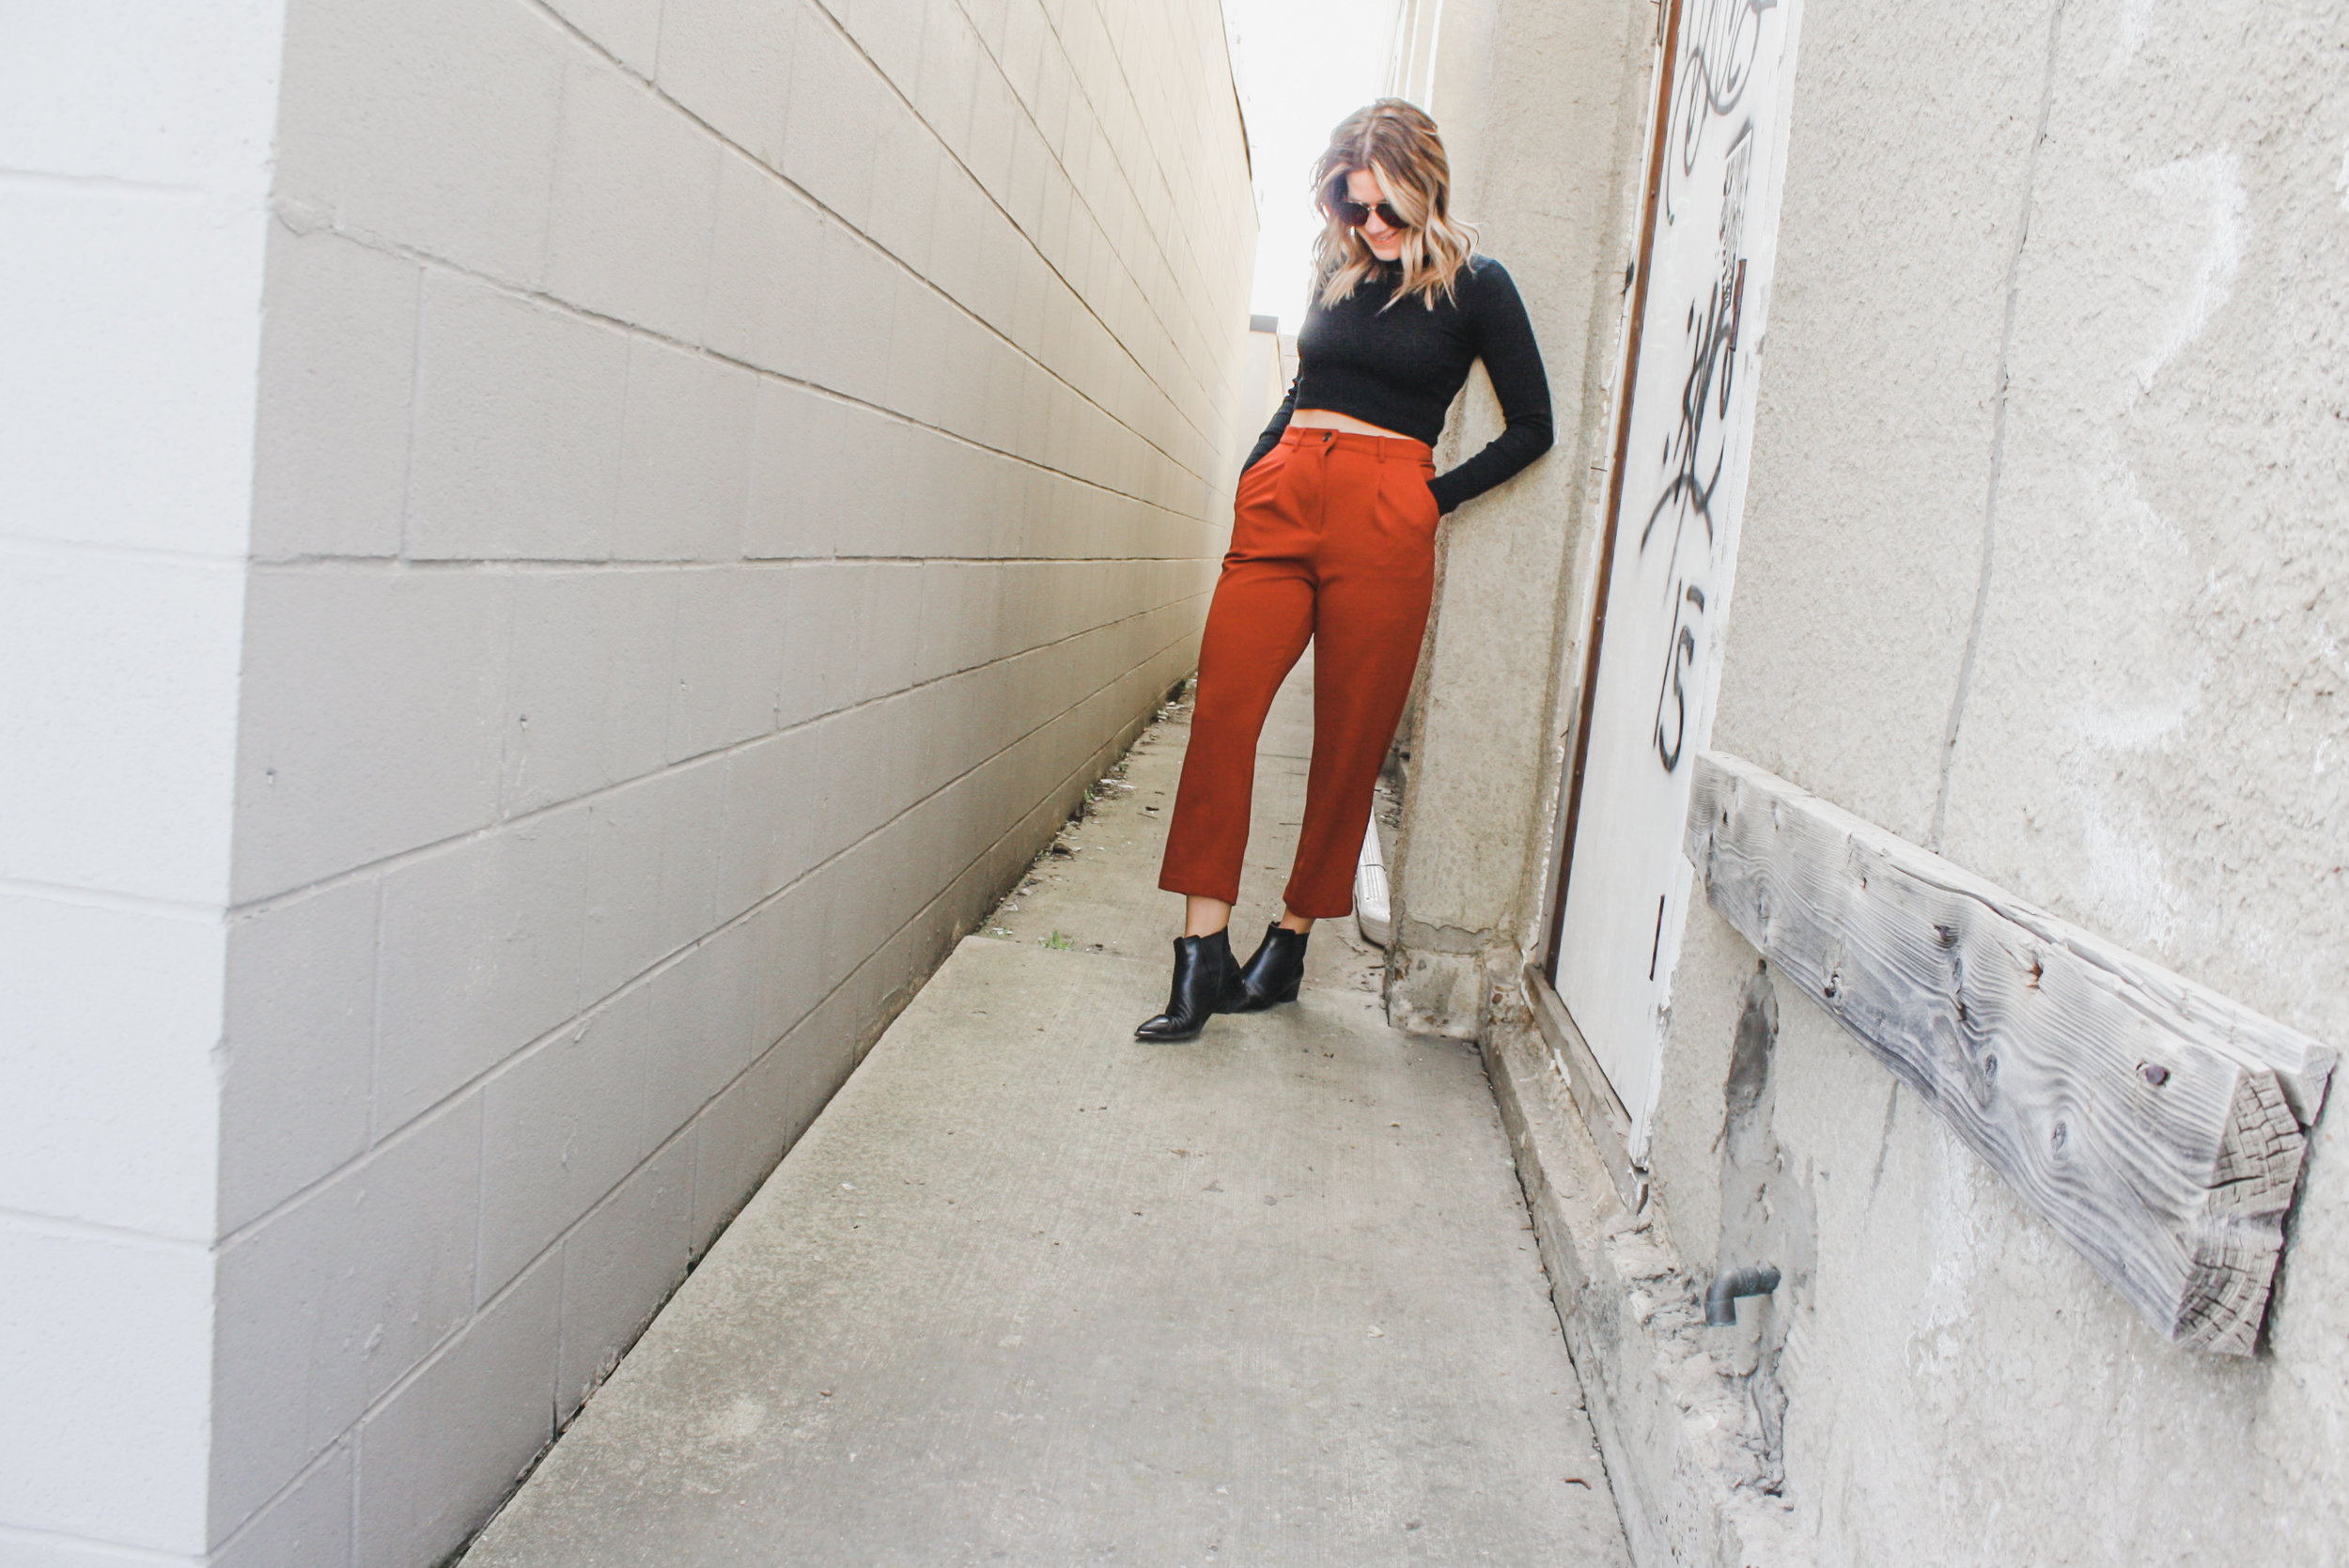 Rust Trouser + Crop Top: